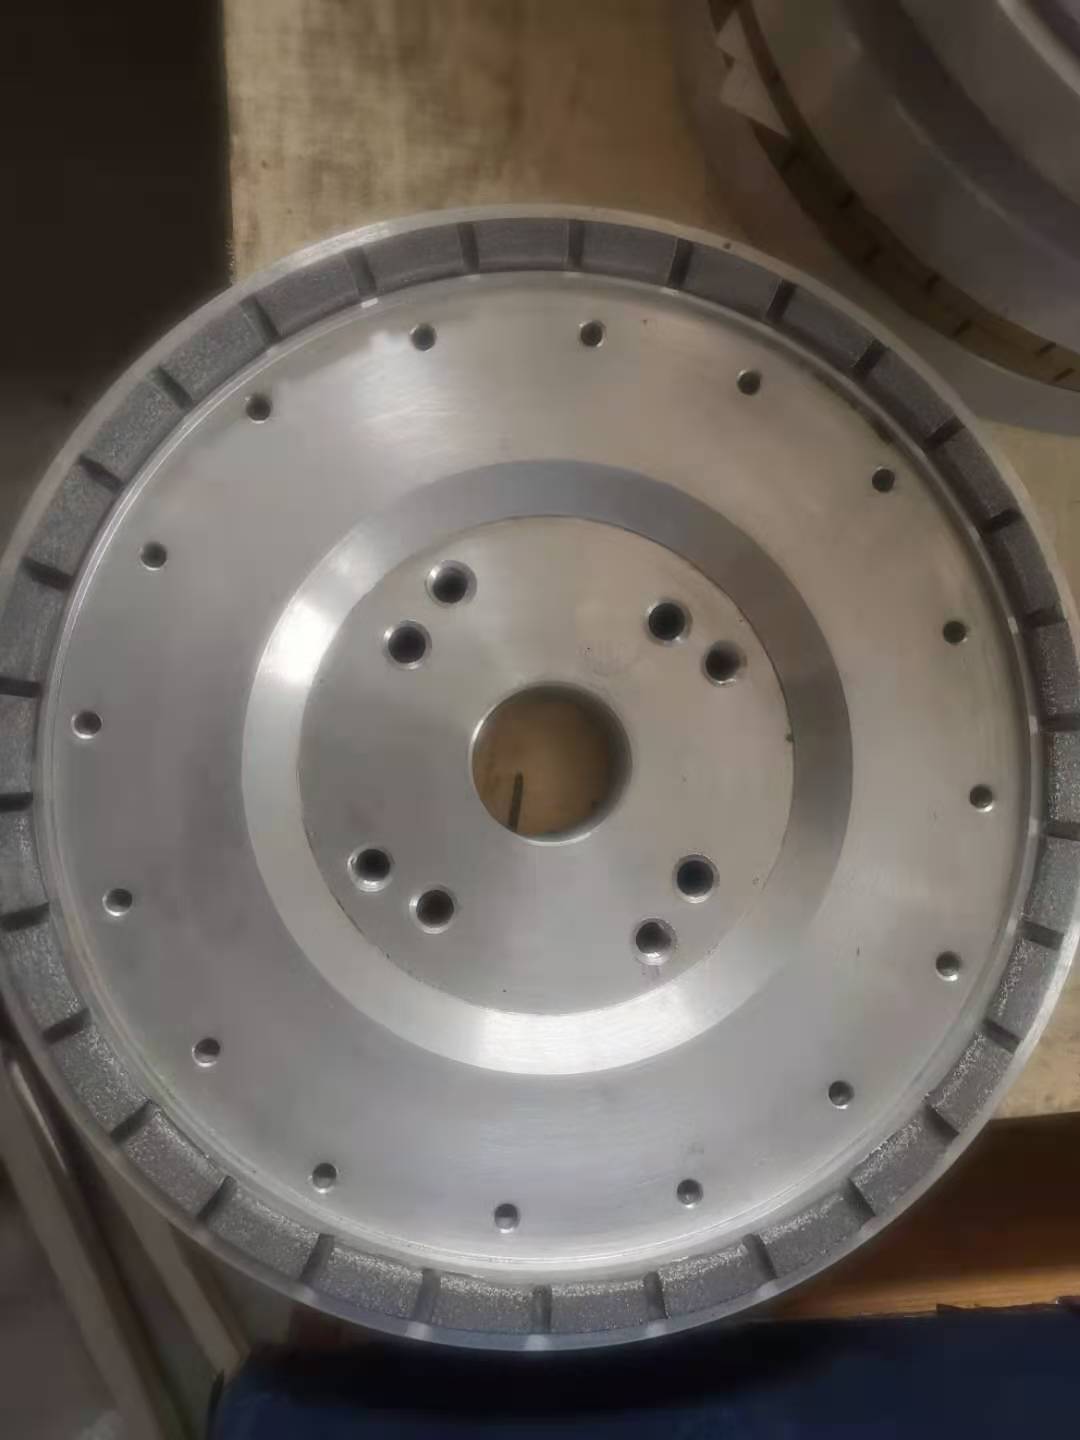 Isang mahusay na tool para sa paggiling ng matitigas na materyalesï¼ceramic diamond grinding wheel